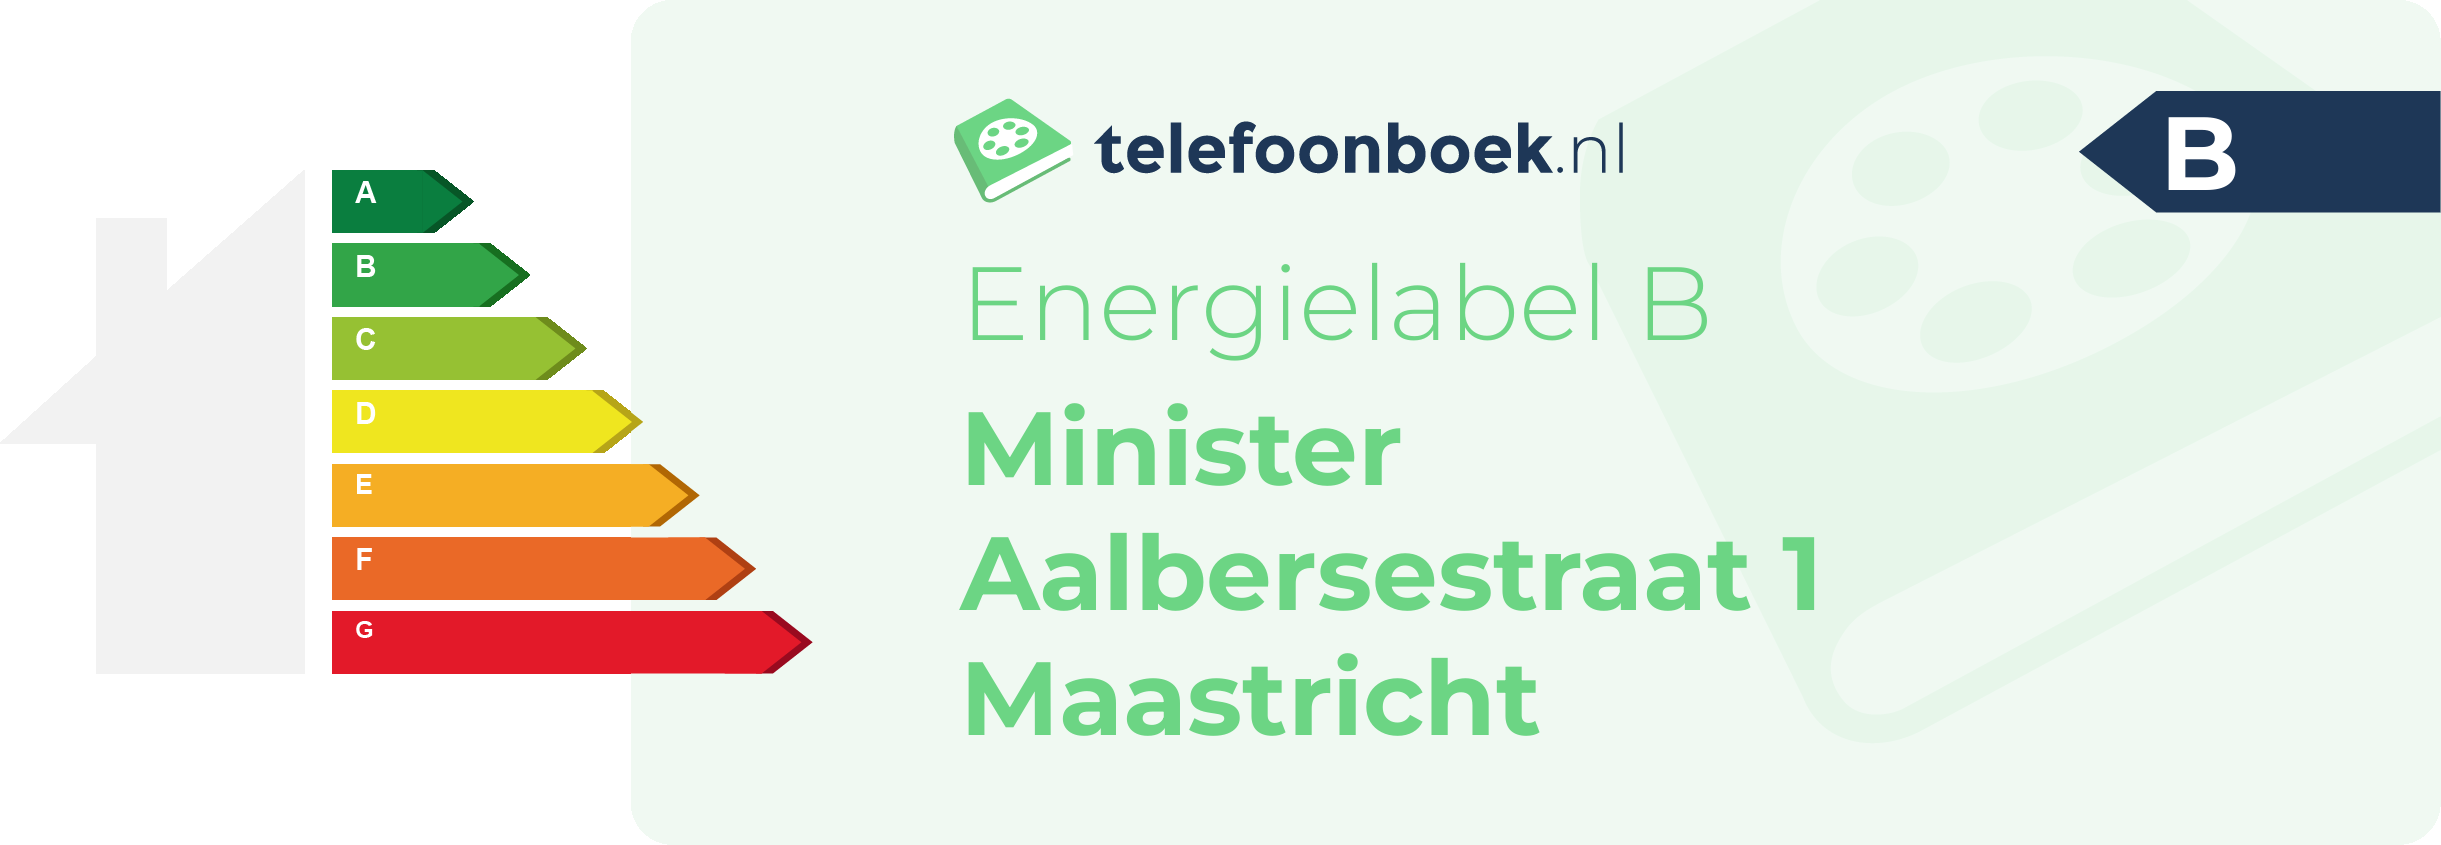 Energielabel Minister Aalbersestraat 1 Maastricht